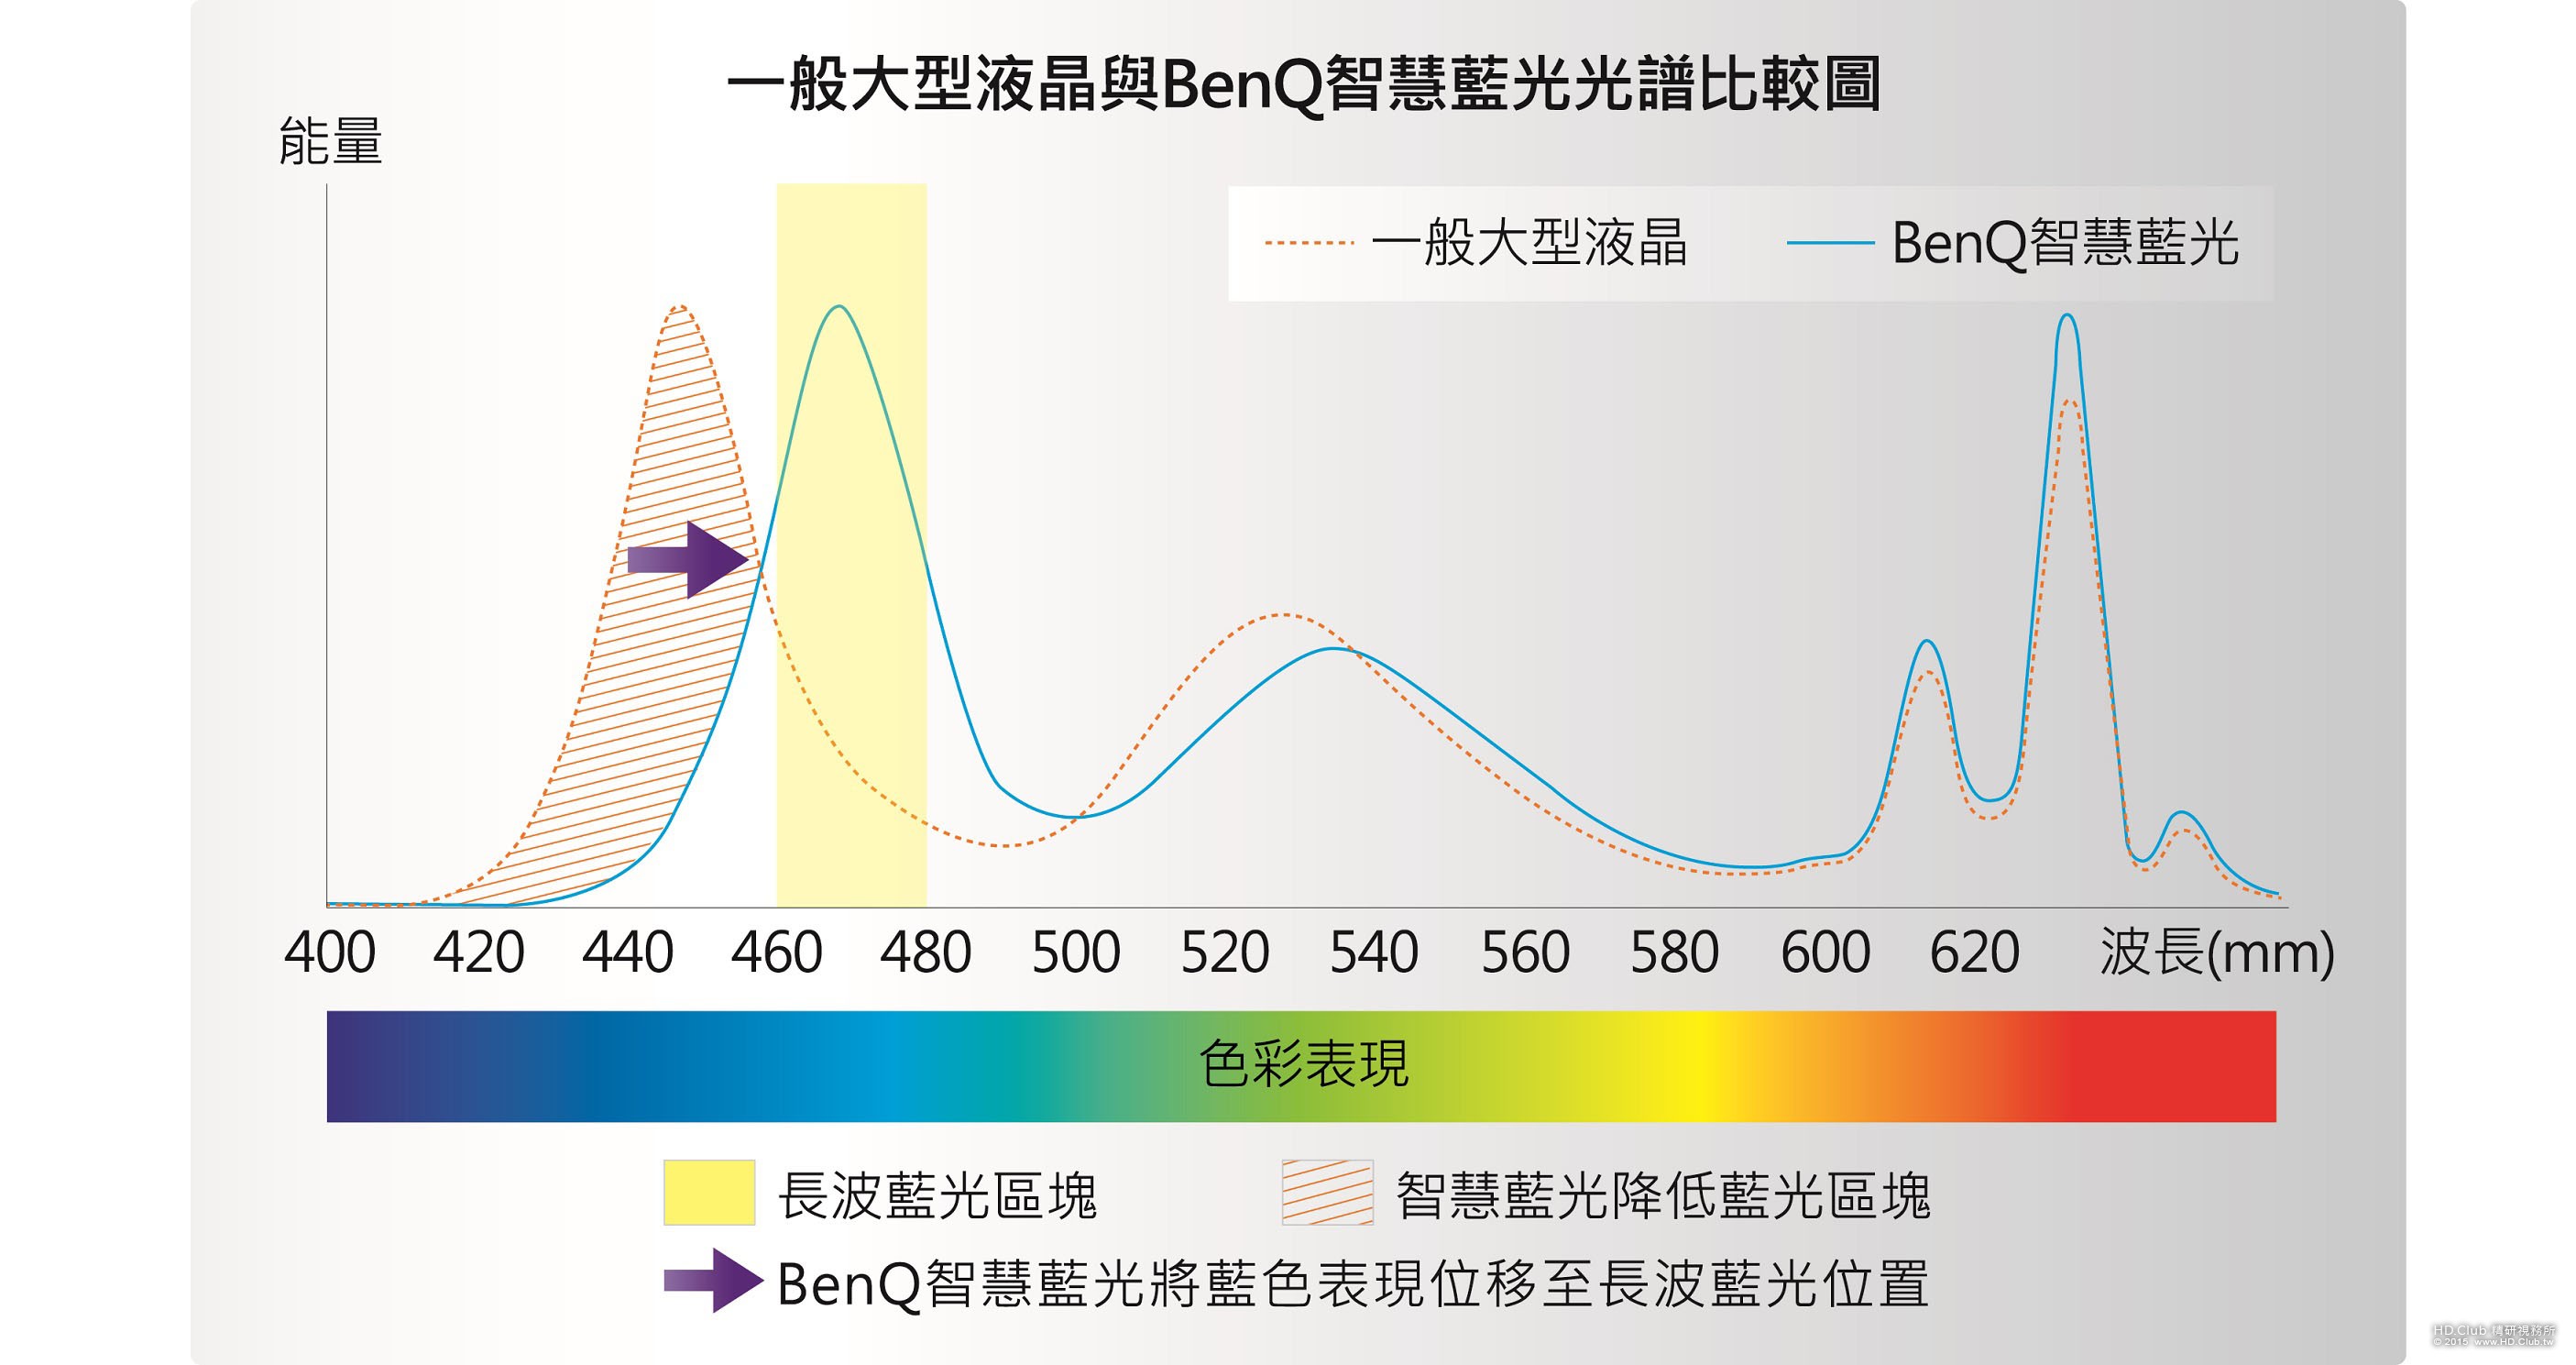 一般大型液晶與BenQ智慧藍光光譜比較圖.jpg